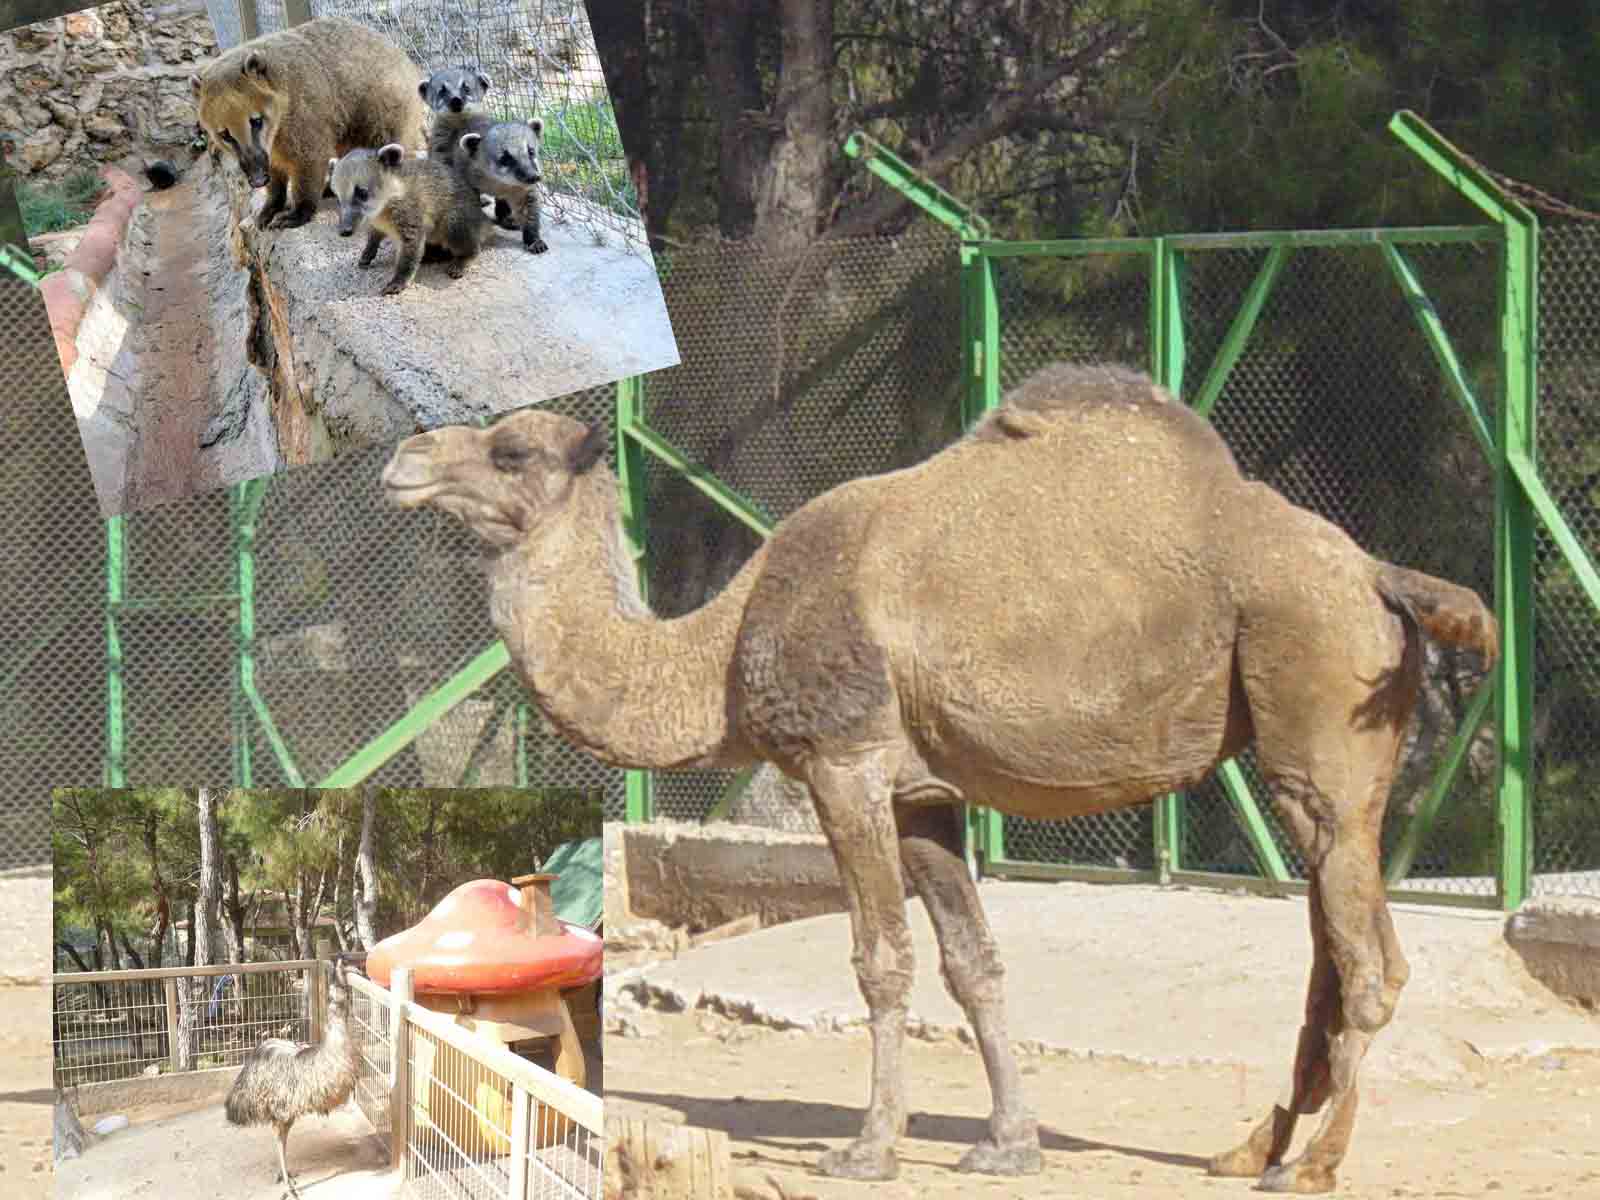 باغ وحش آنتالیا(ملاقات با حیوانات در شهر توریستی)